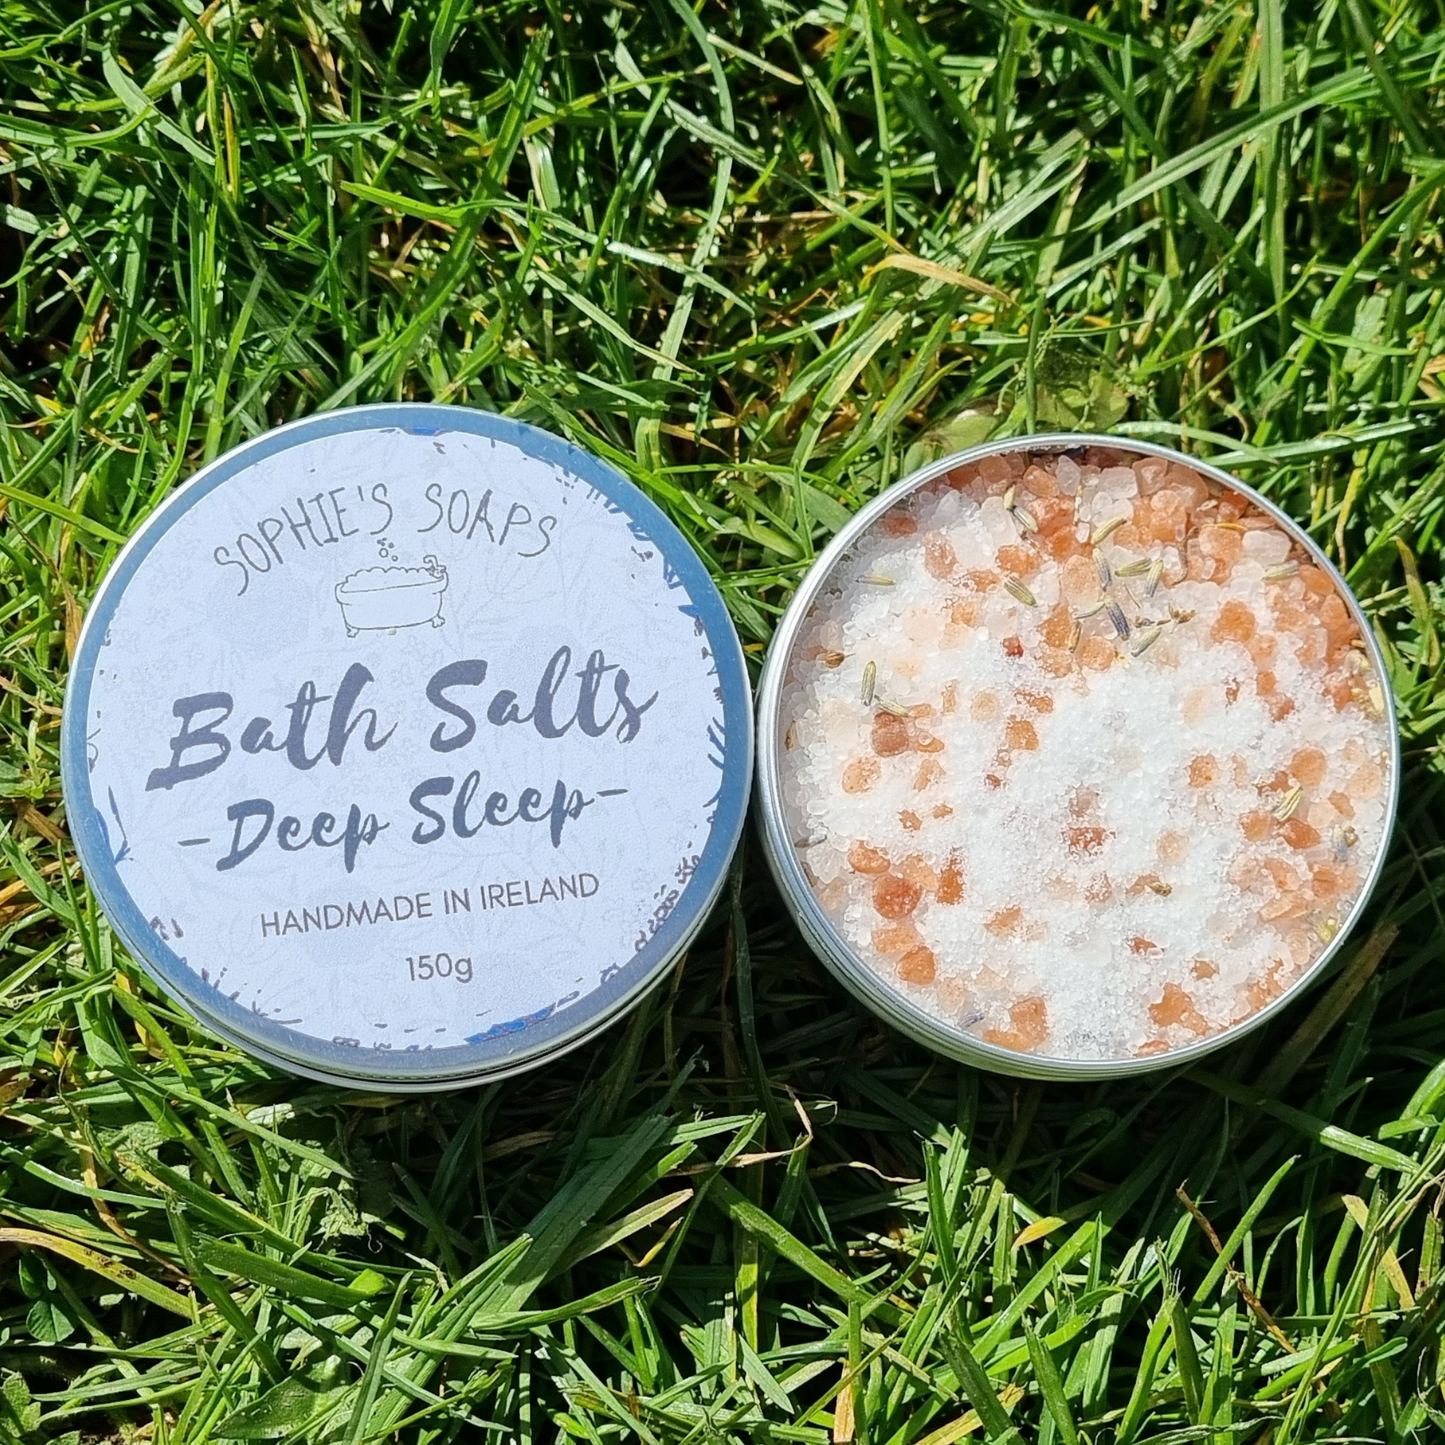 Floral Bath Salts - Deep Sleep - Sophie's Soaps